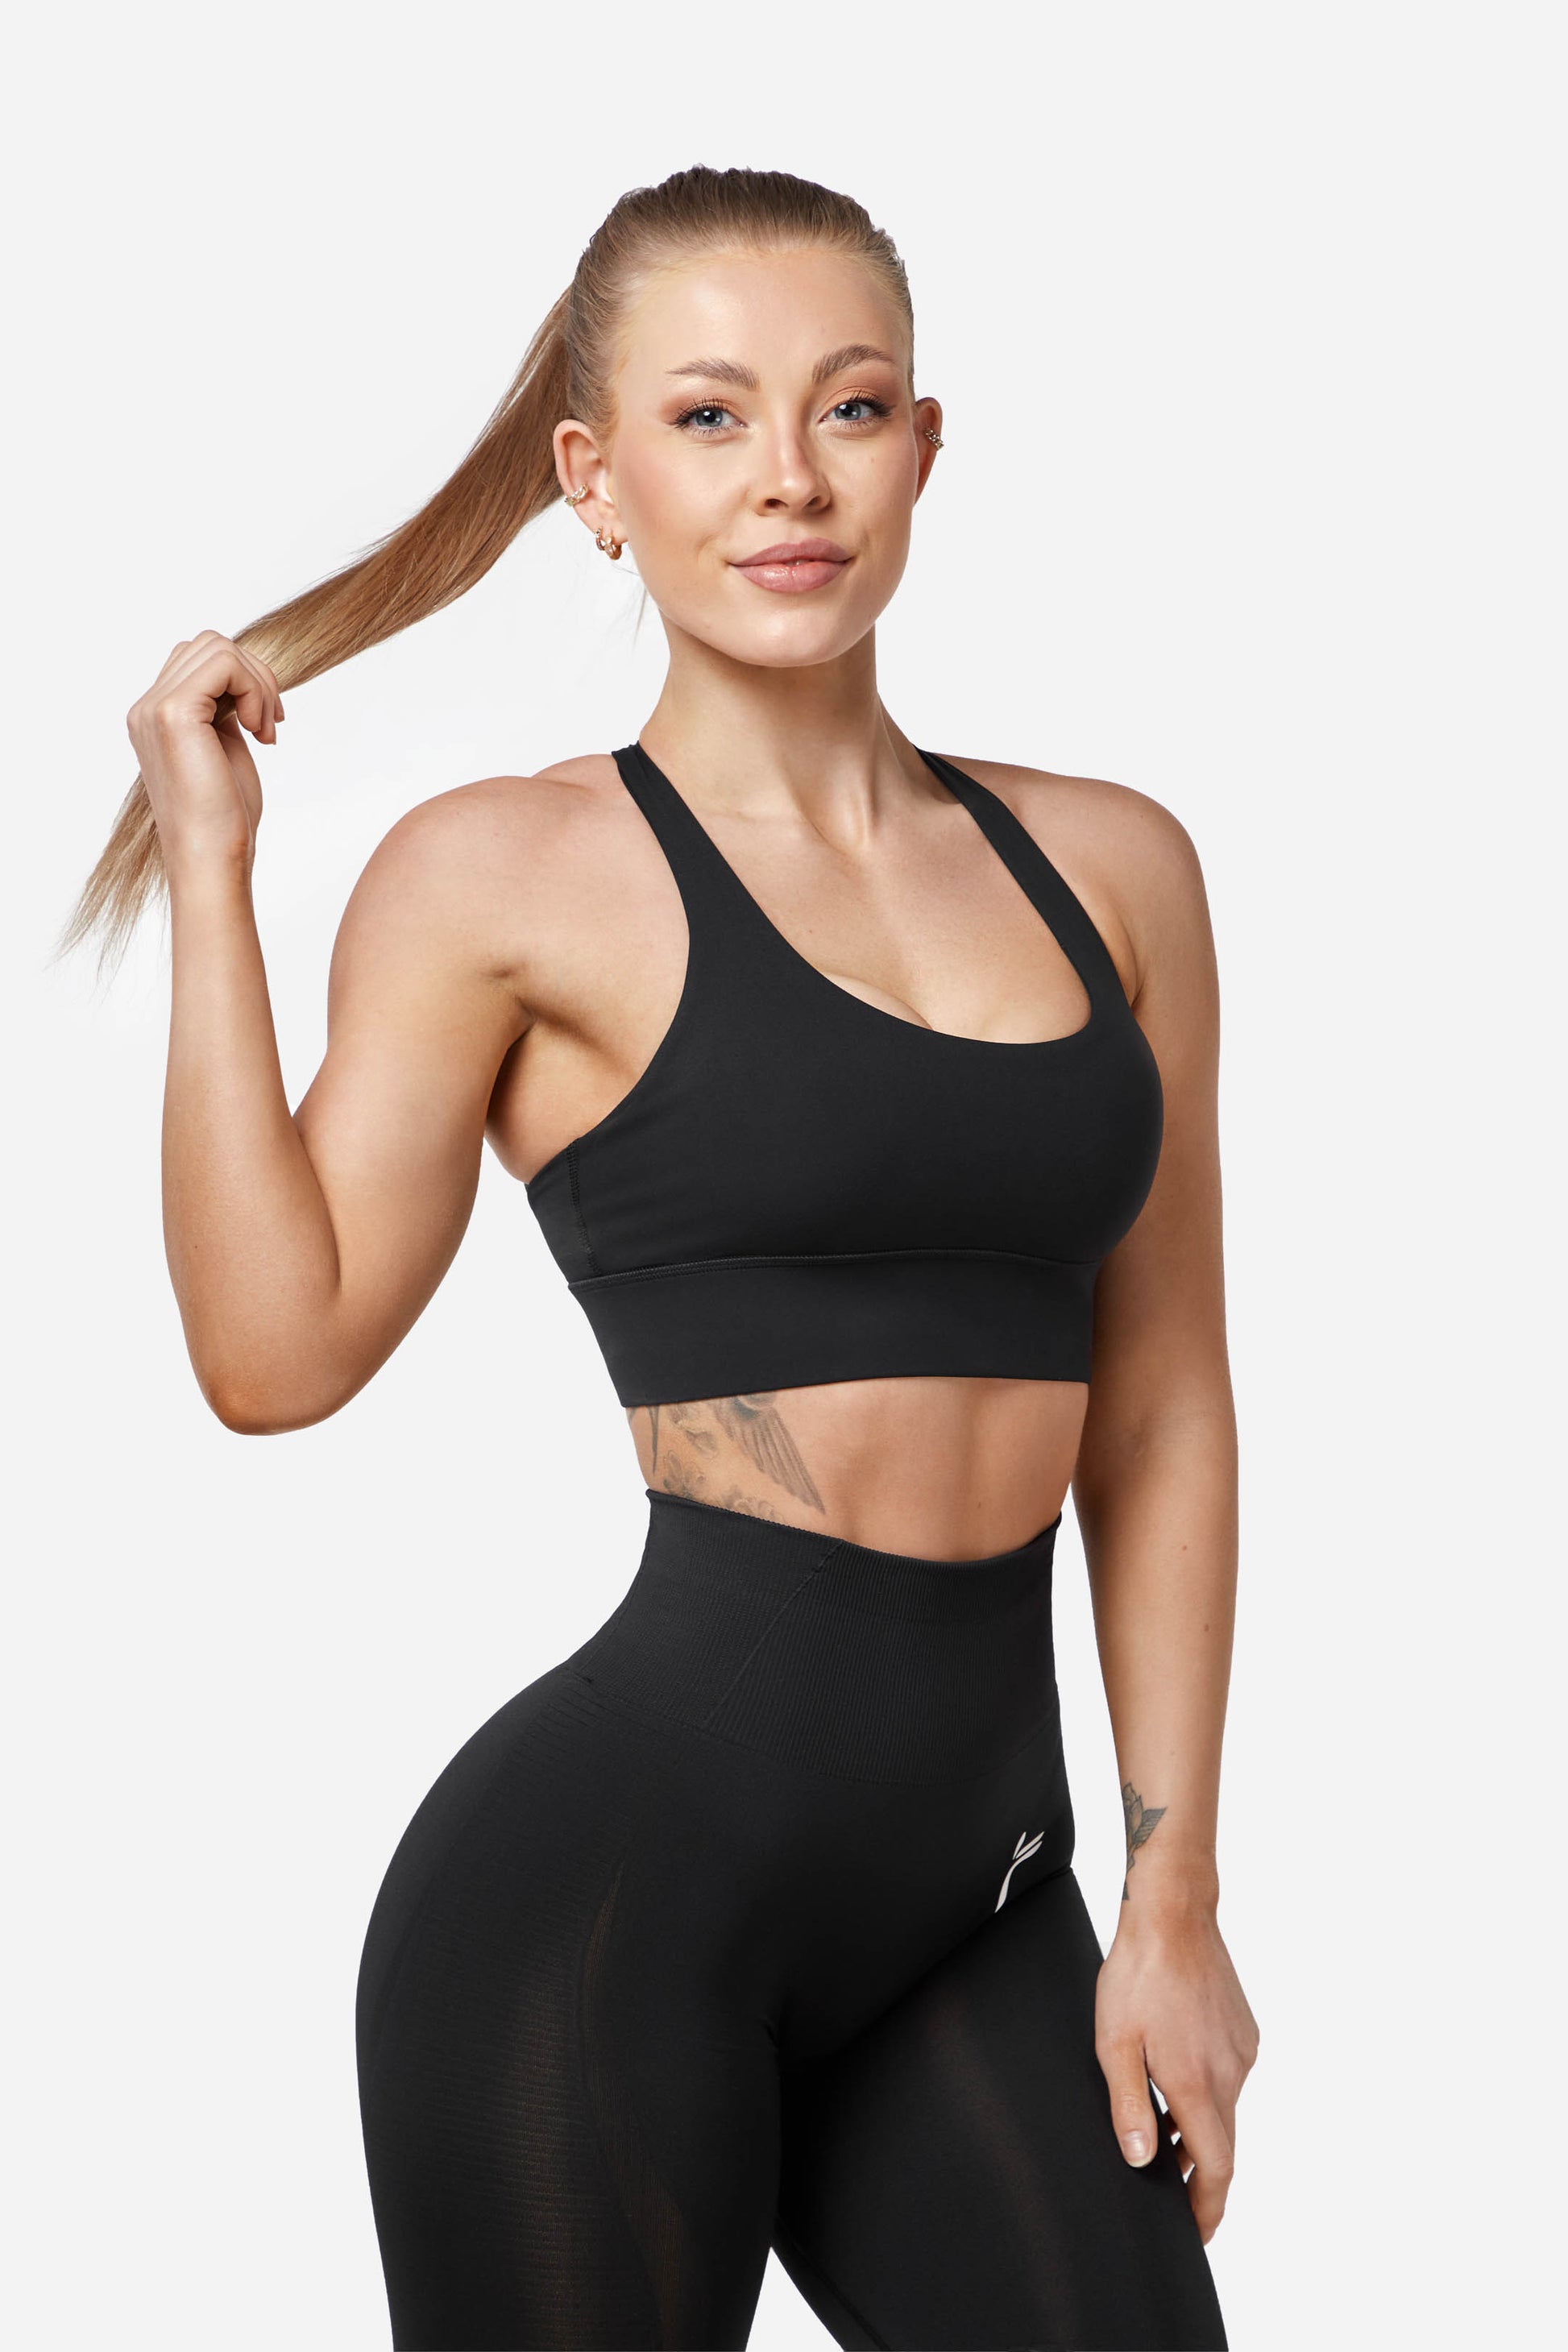 Protokolo Elixe Pant Women Workout Clothes Fitness Wear - Women Sportswear, Gym clothing & Fitness Wear